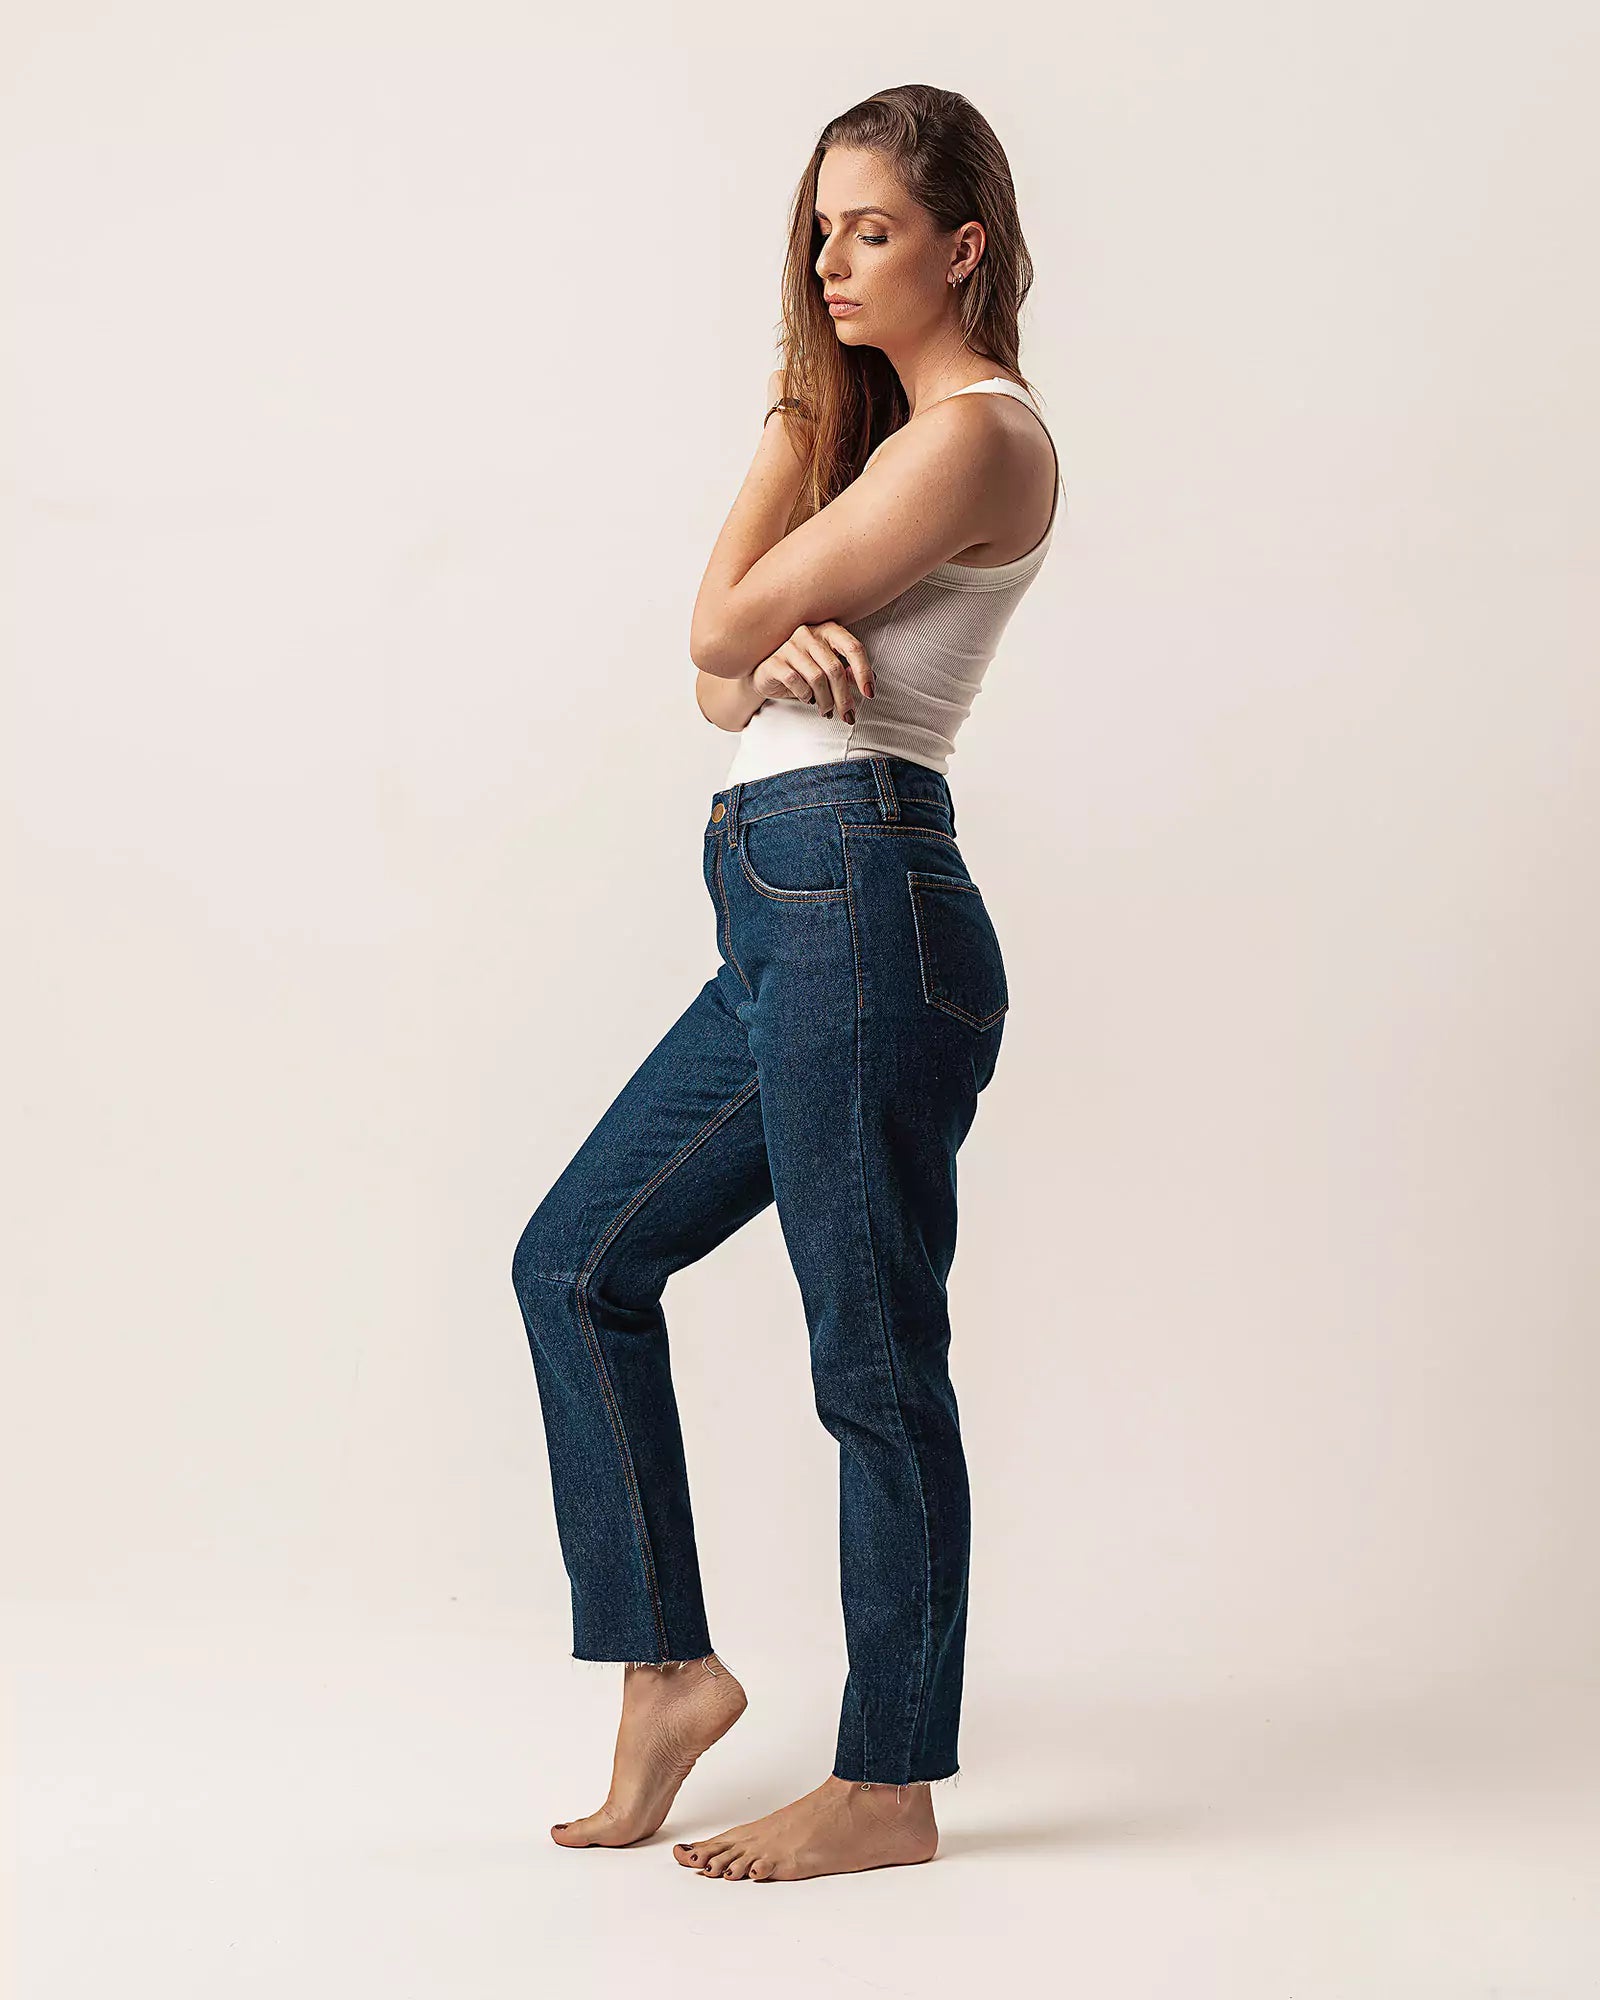 Calça Mom Jeans Barra Fio Azul Escuro Eco Denim™. Compre online moda sustentável e atemporal na Minimadeia. Roupas femininas estilosas, básicas e sustentáveis. Foto produto 01